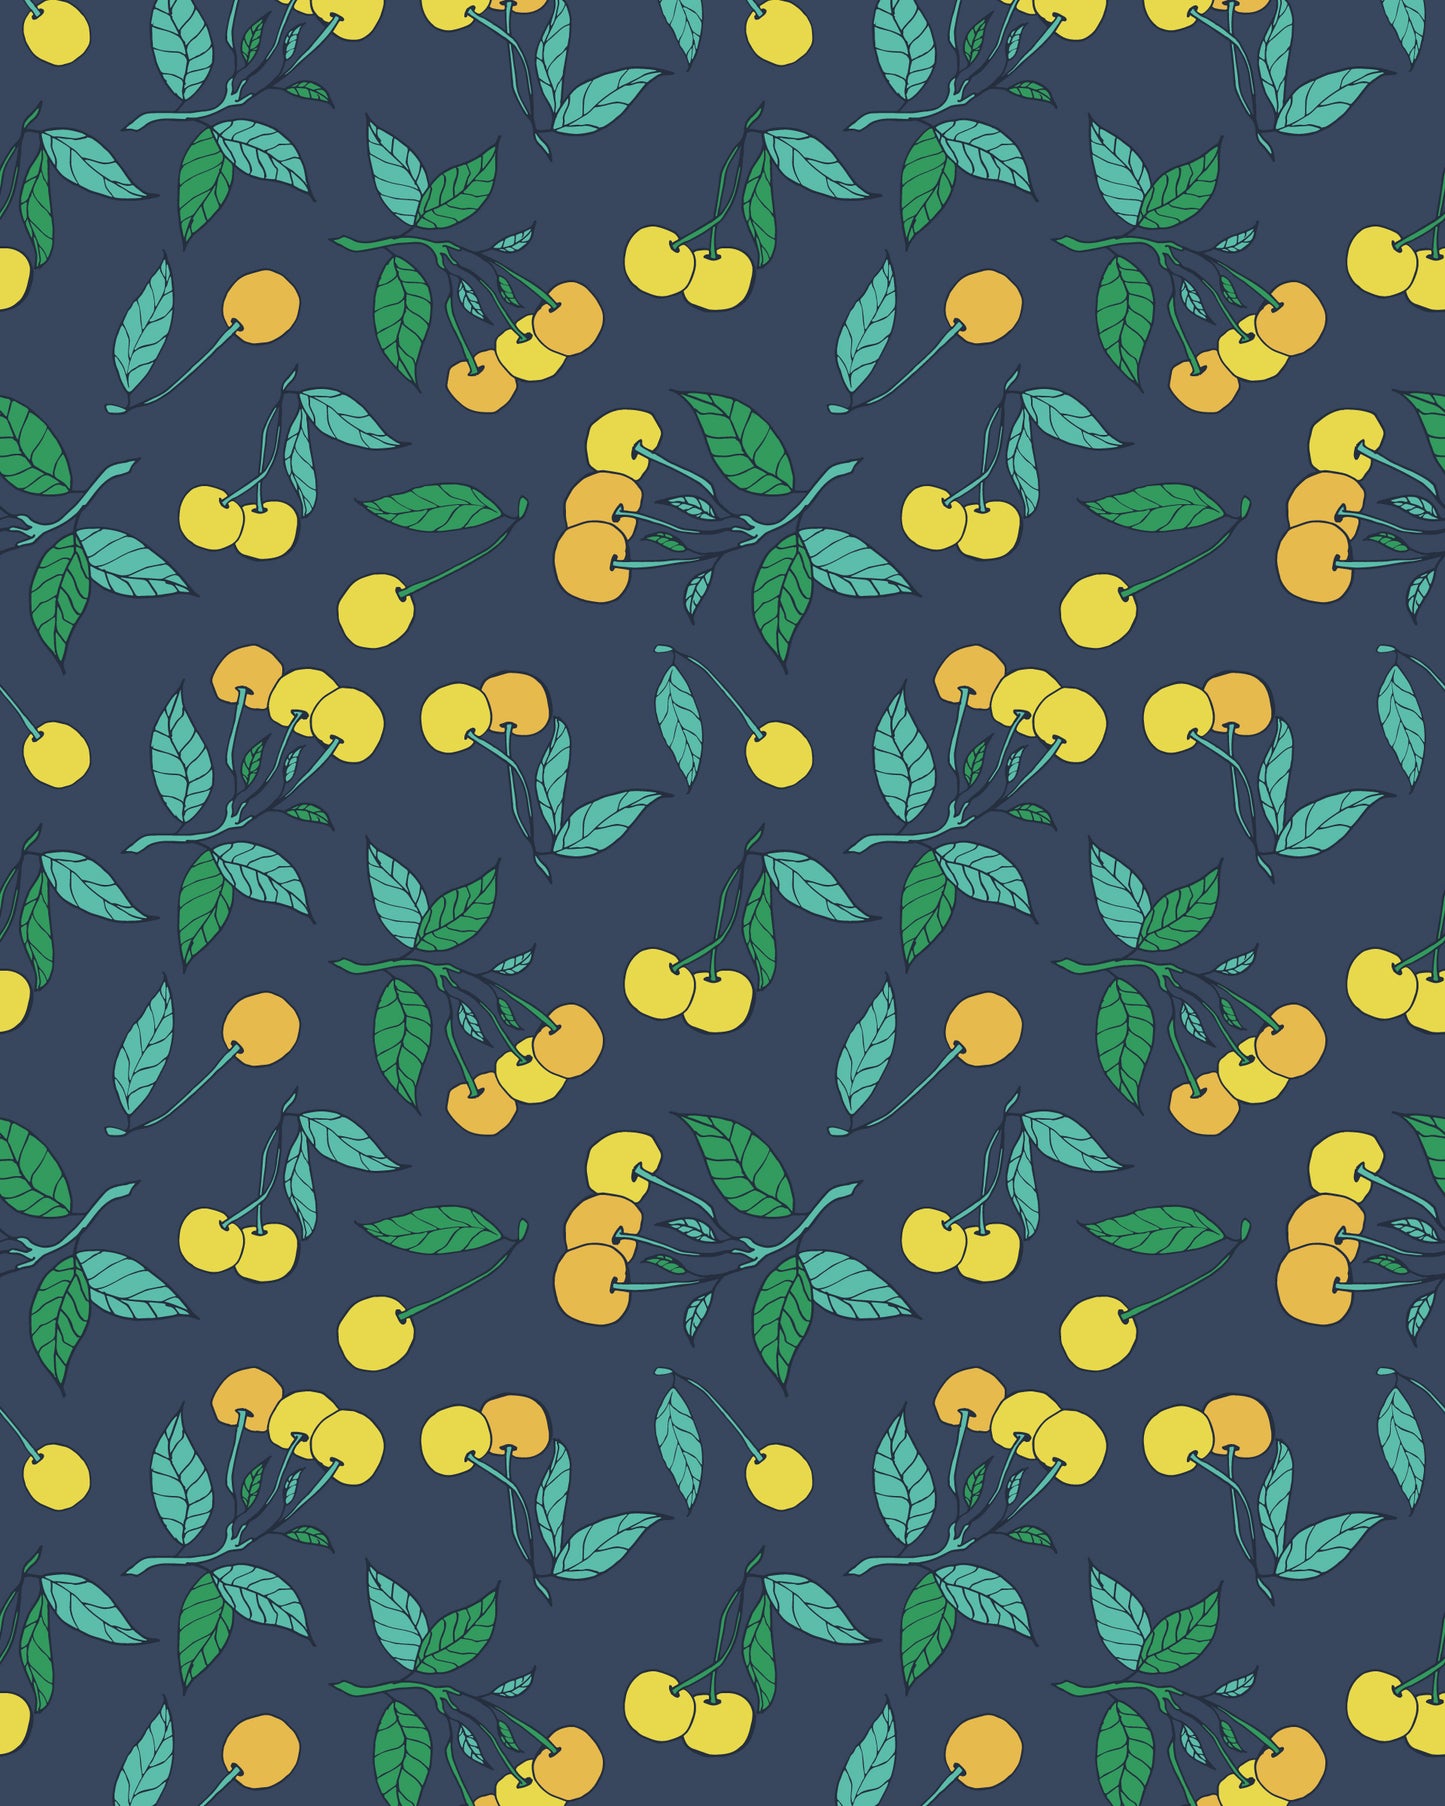 Yellow Cherries Print Shirt